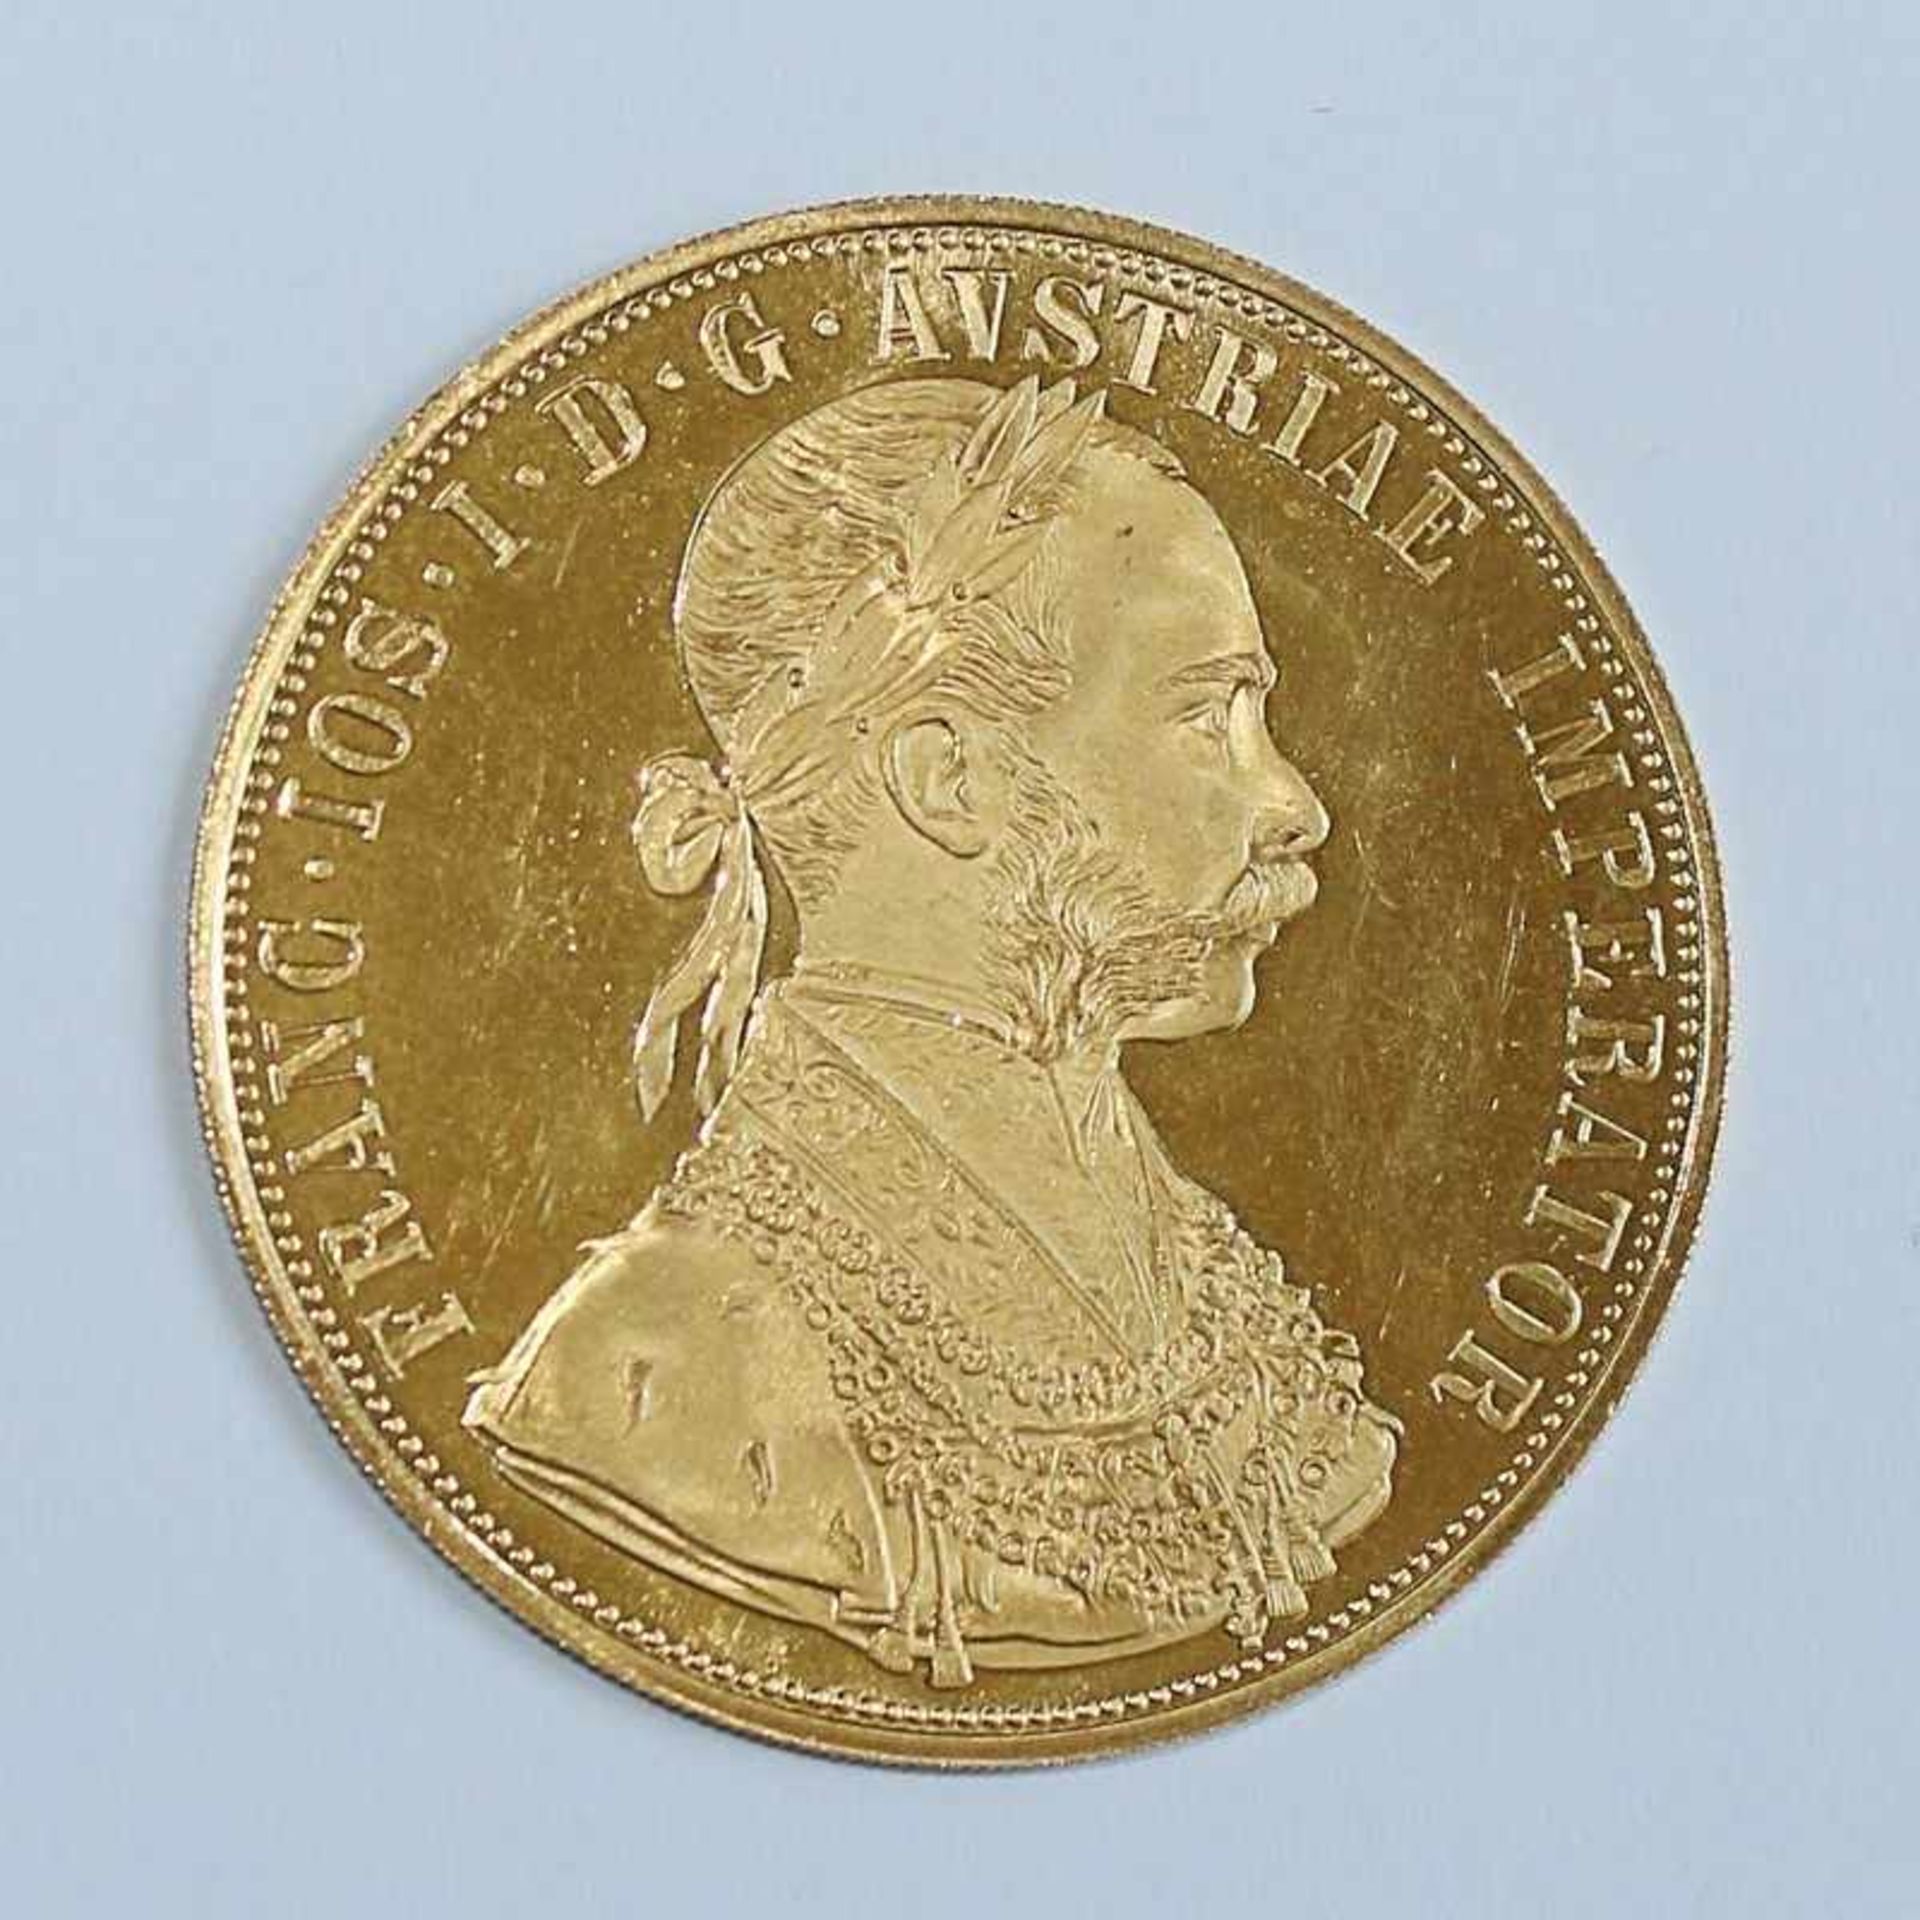 Gold Österreich - 4 Dukaten 1915 Kaiser Franz Joseph, NP, D 39mm, G 13,9g, vz